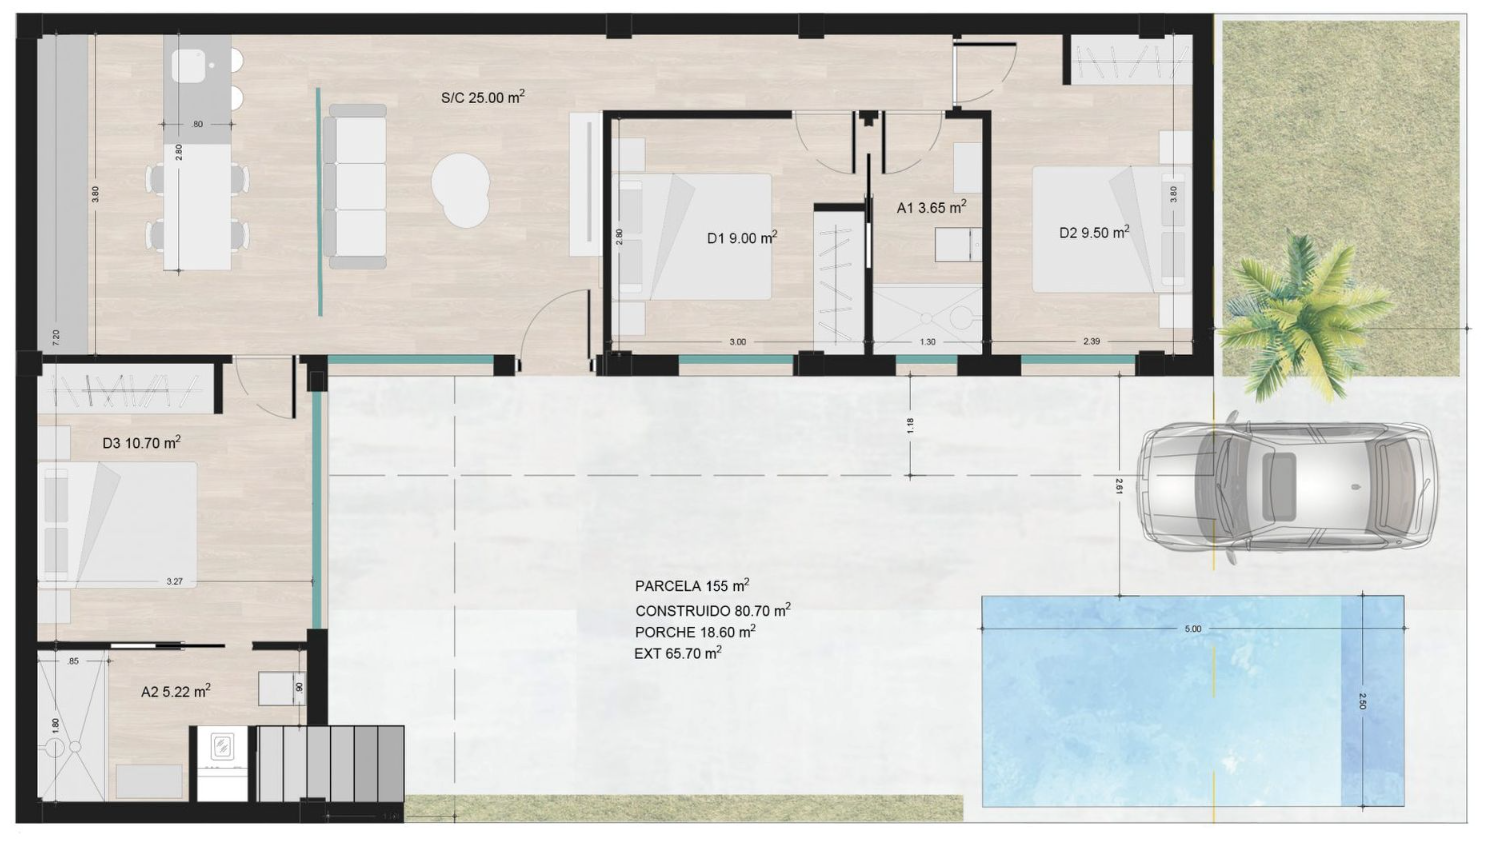 Floor plan for Luxury Villa ref 4059 for sale in Roldán Spain - Murcia Dreams